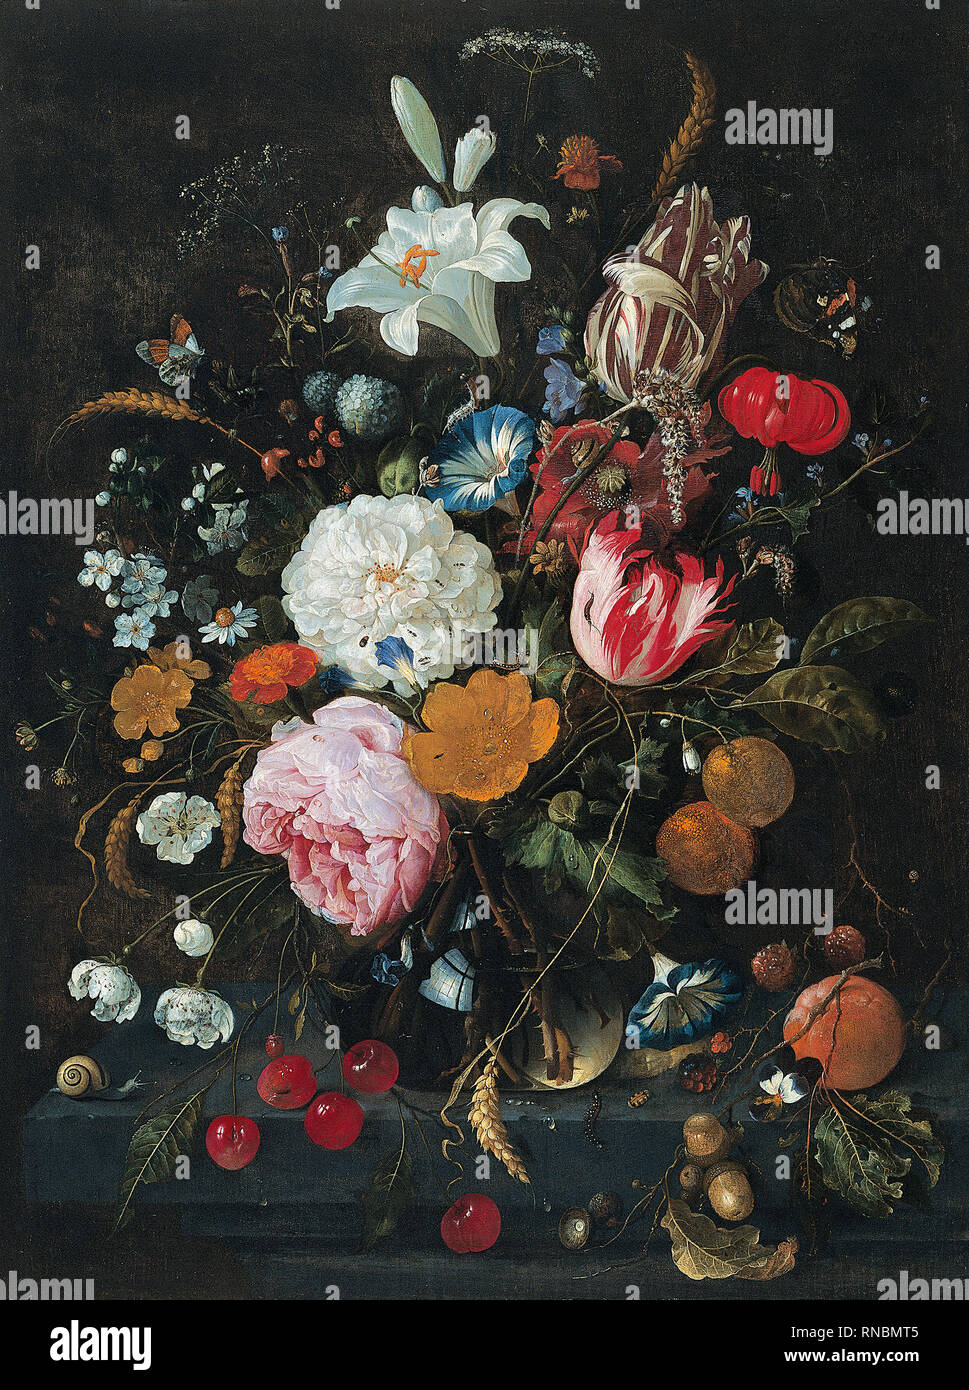 Jan Davidsz. De Heem (Utrecht, 1606-Amberes, 1683/4). Fleurs dans un vase en verre avec des fruits (ca. 1665). Huile sur panneau. 53,4 x 41 cm. Musée : Musée national Musée Thyssen-Bornemisza, Madrid. Banque D'Images